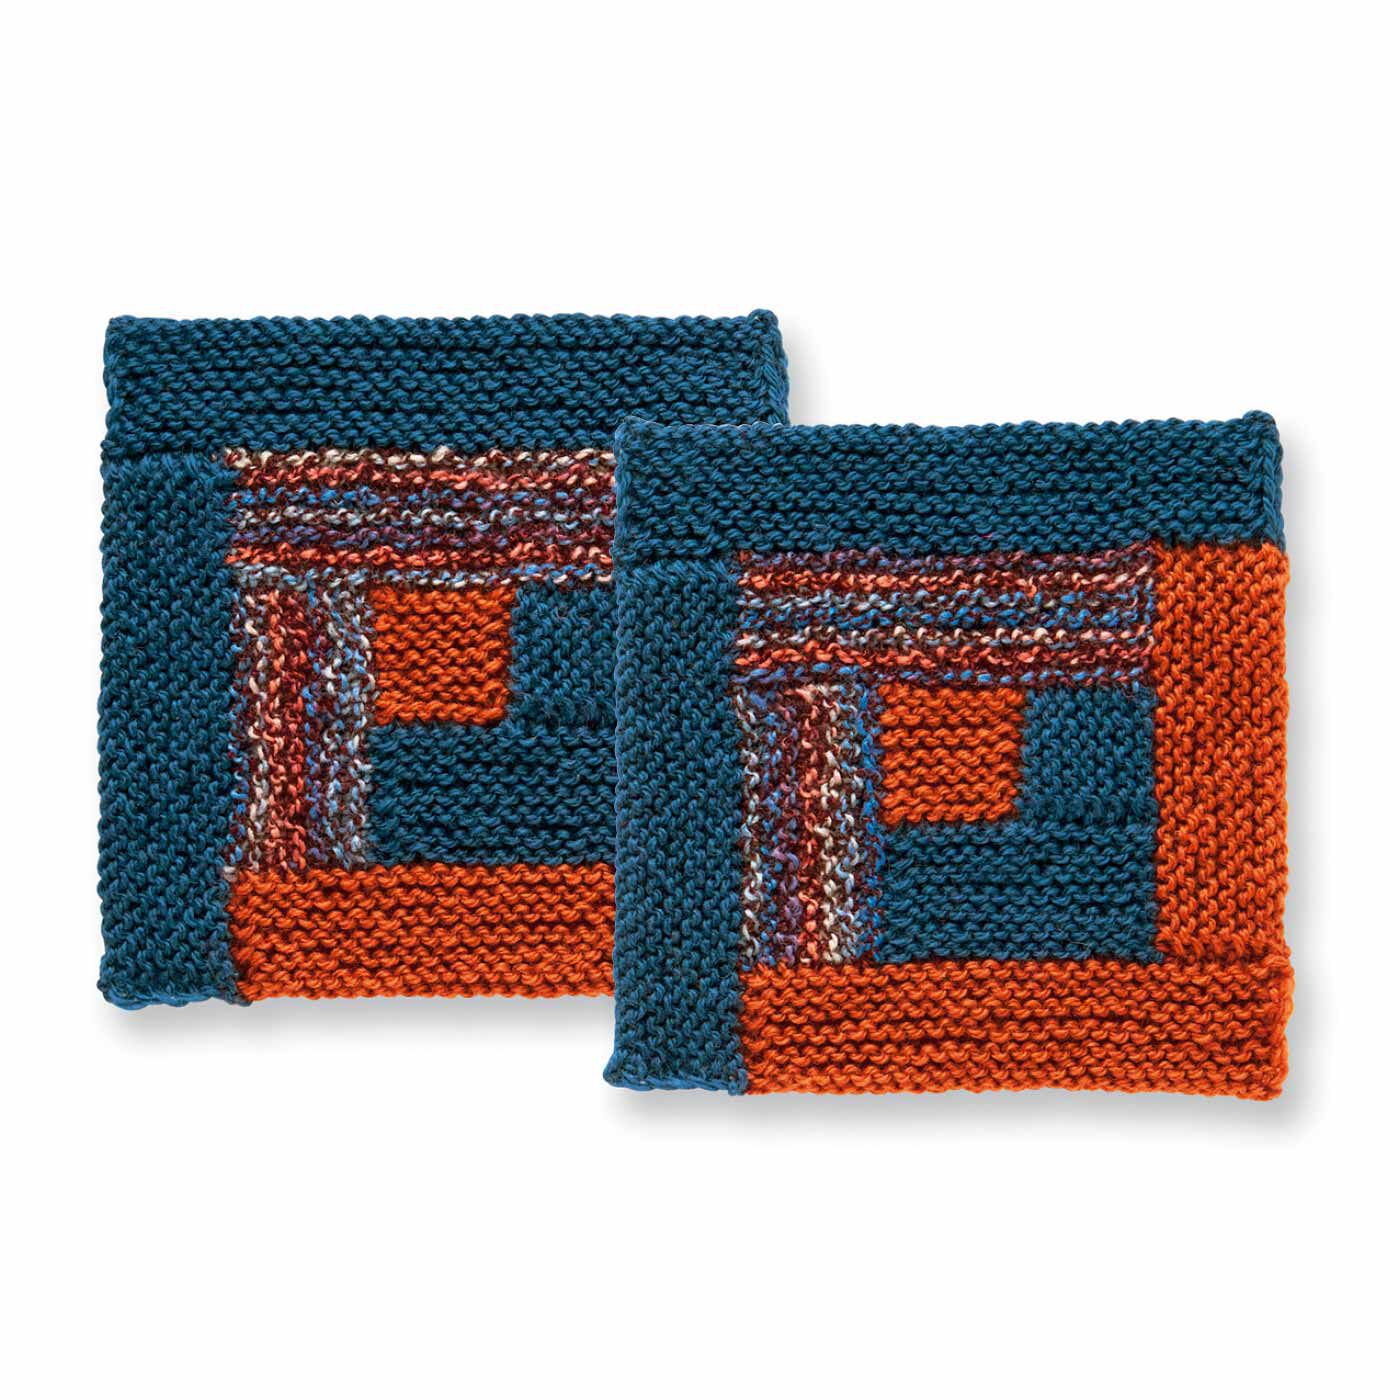 クチュリエ|棒針編みの沼にはまる ユニーク編み地のサンプラーの会|ログキャビン風のカラーブロック